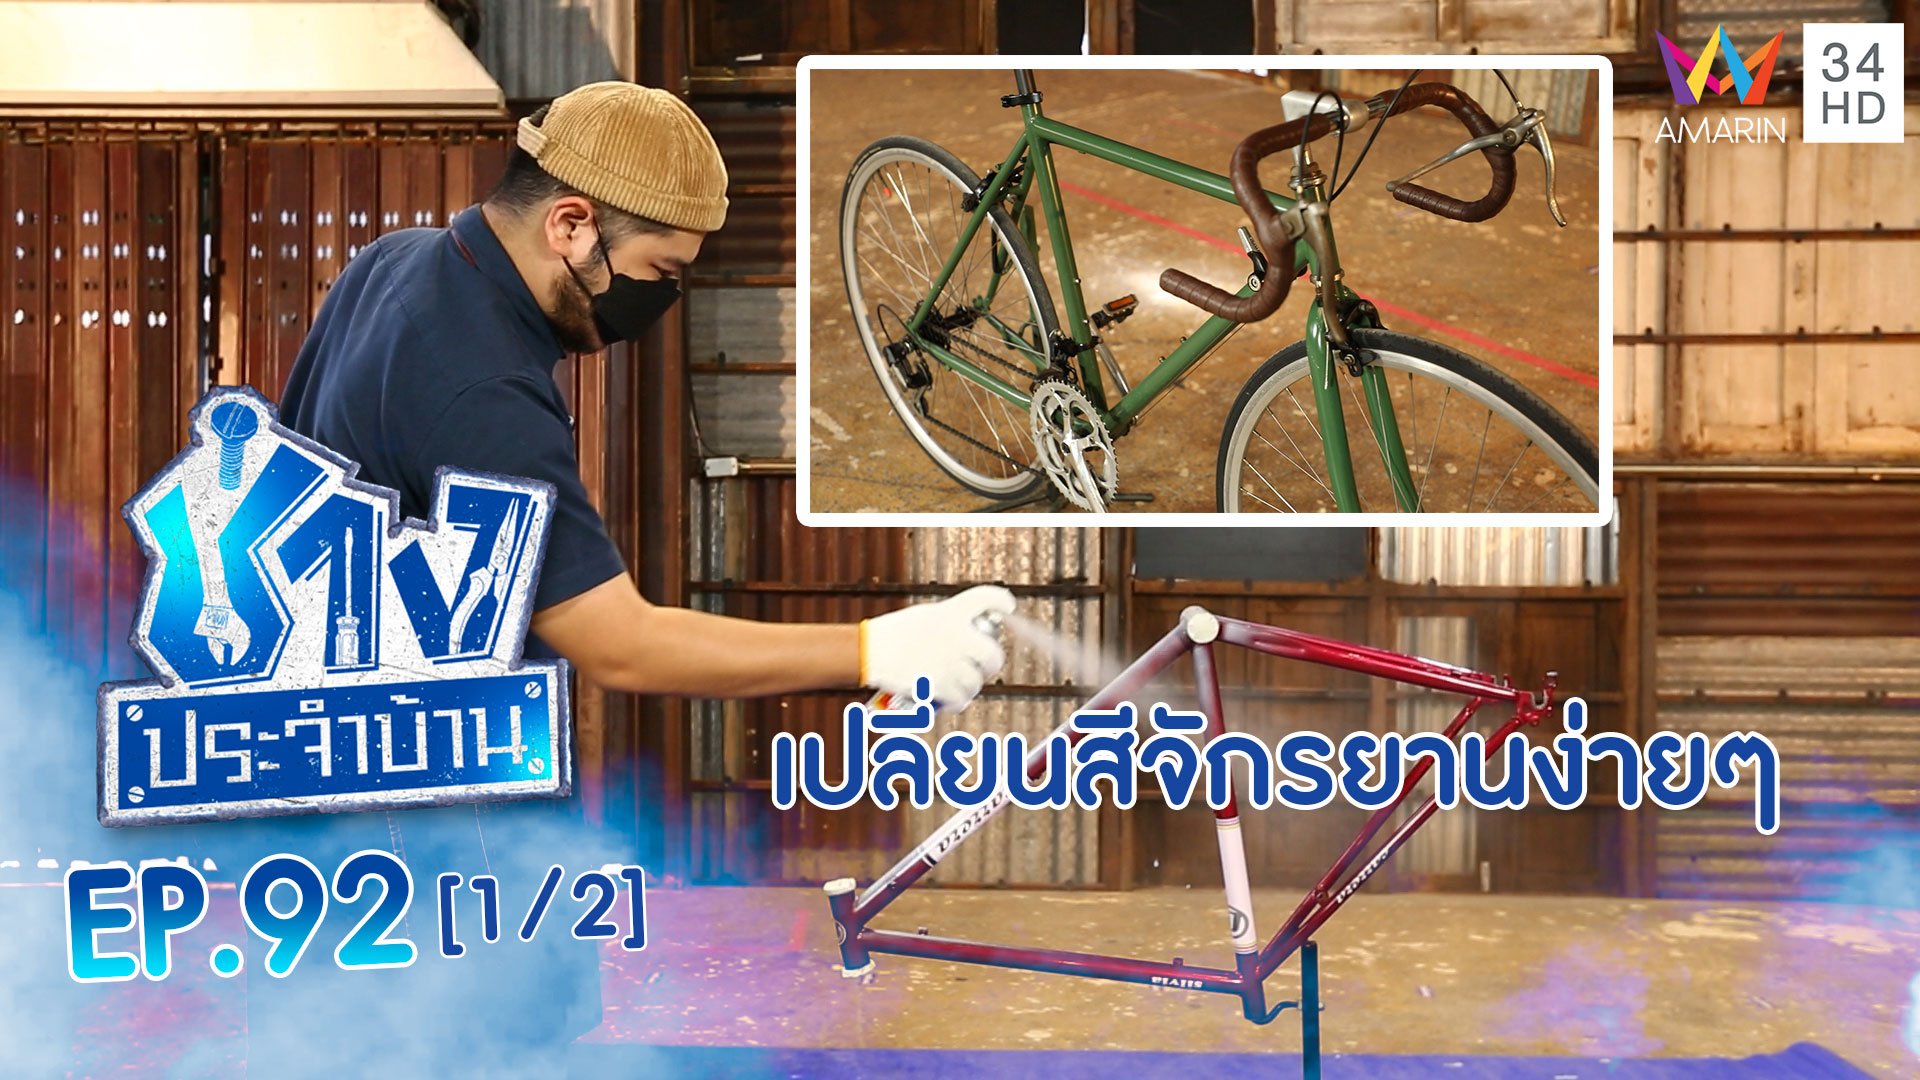 ช่างประจำบ้าน | EP.92 วิธีเปลี่ยนสีจักรยาน ที่สามารถทำเองได้ (1/2) | 13 พ.ย. 64 | AMARIN TVHD34